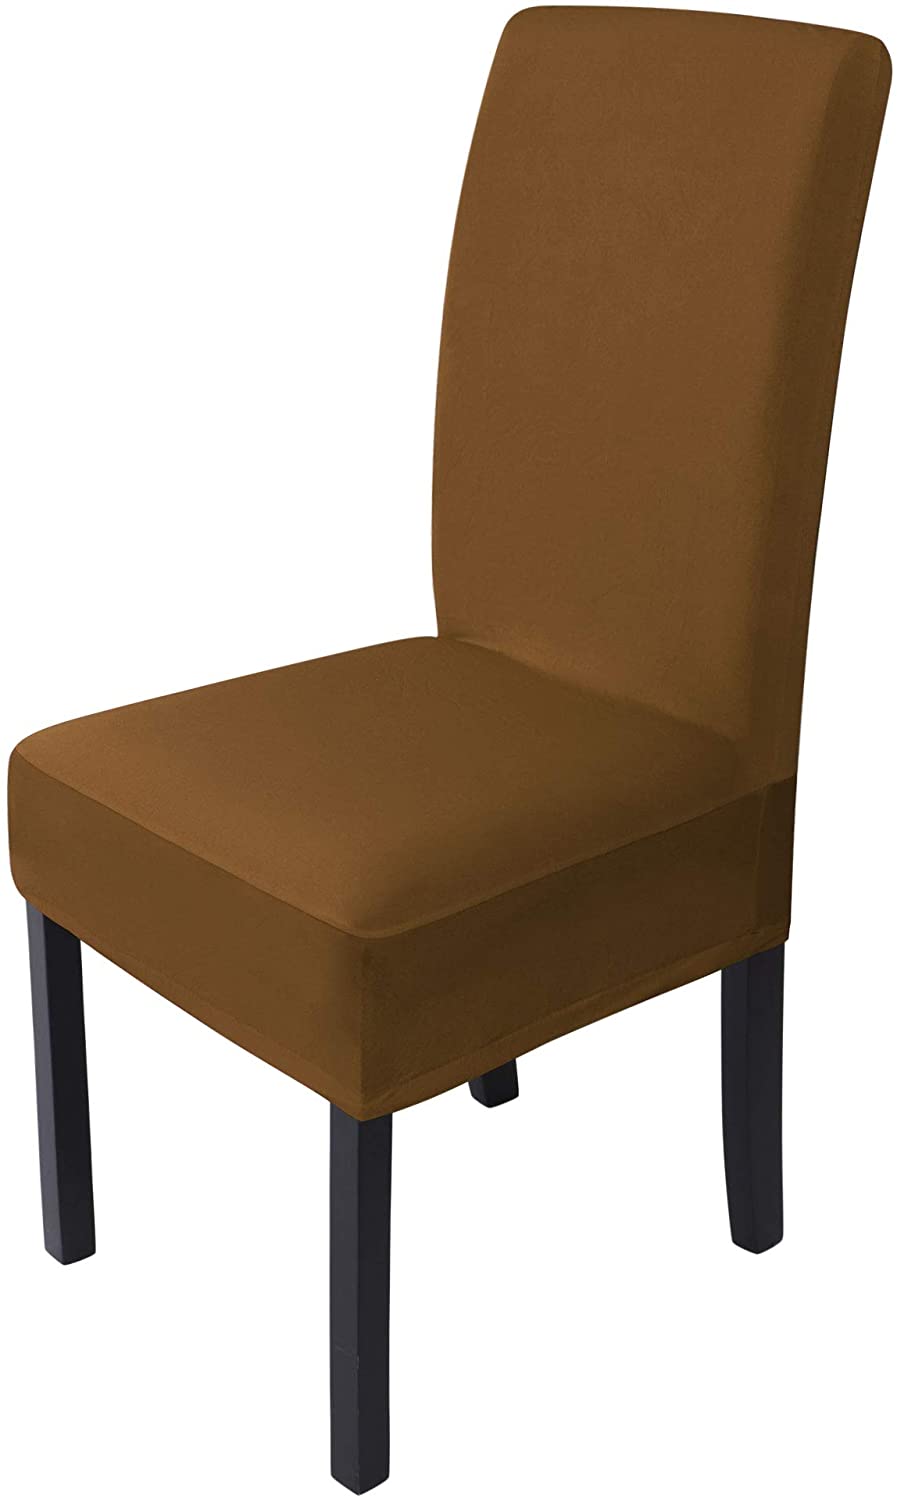 低価格で大人気の 椅子や 取り外し可能な椅子カバークッションまたはERフィットWashable-グレー実用的なデザイン